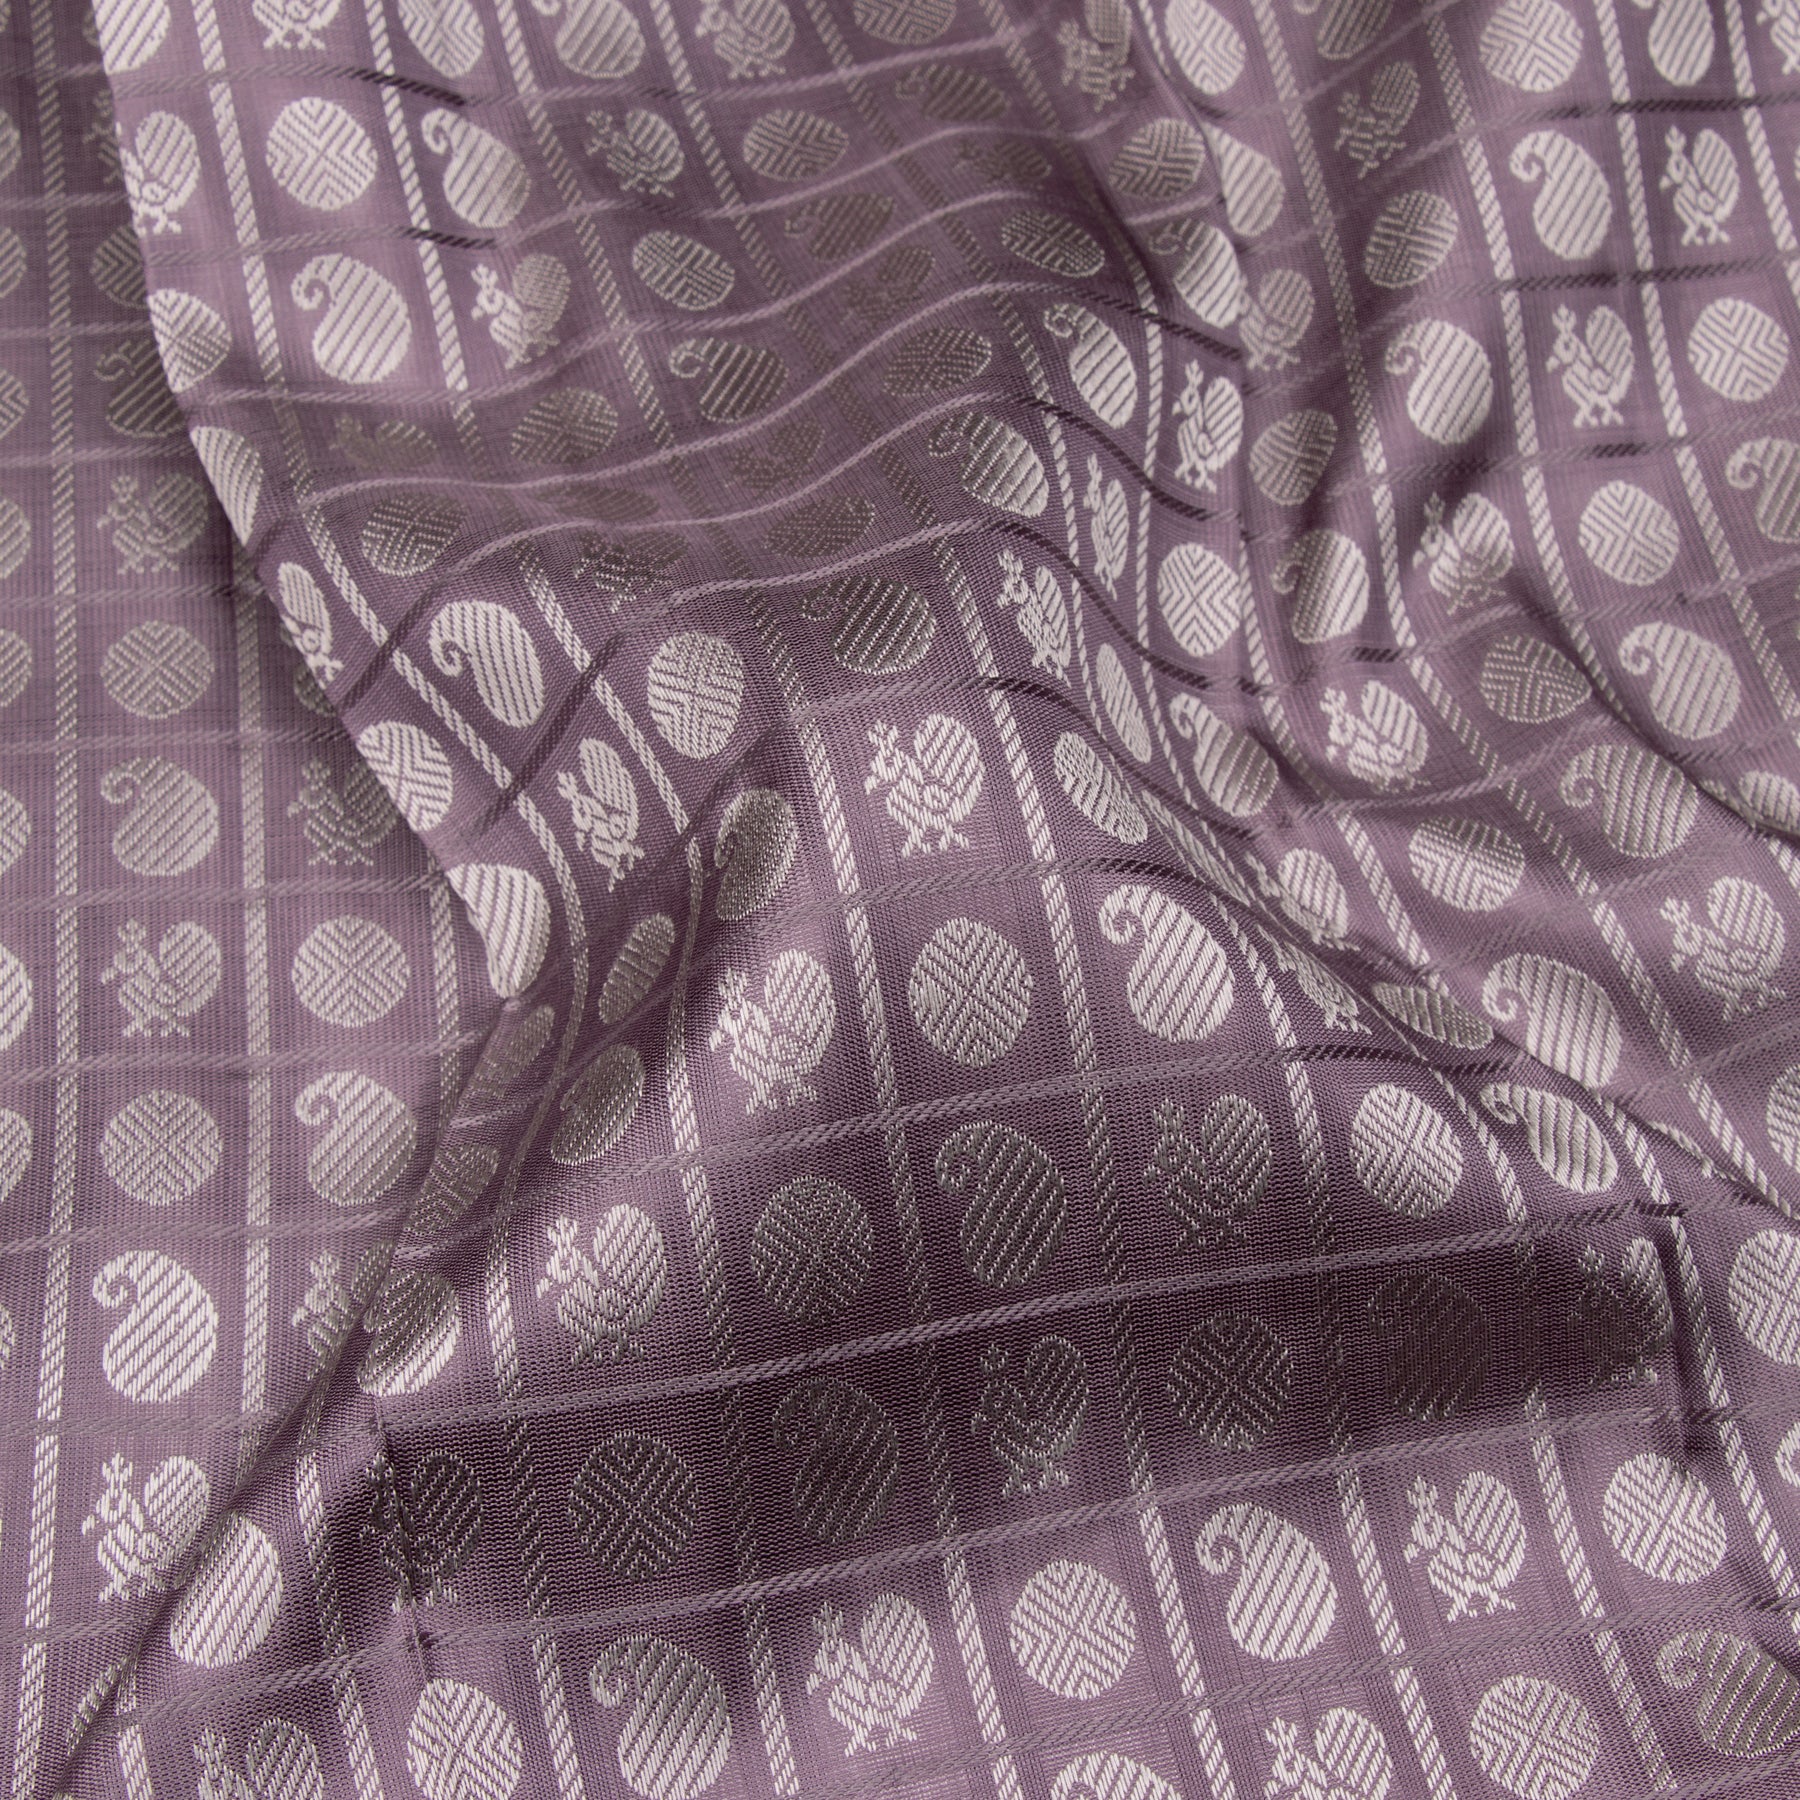 Kanakavalli Kanjivaram Silk Sari 23-599-HS001-05248 - Fabric View